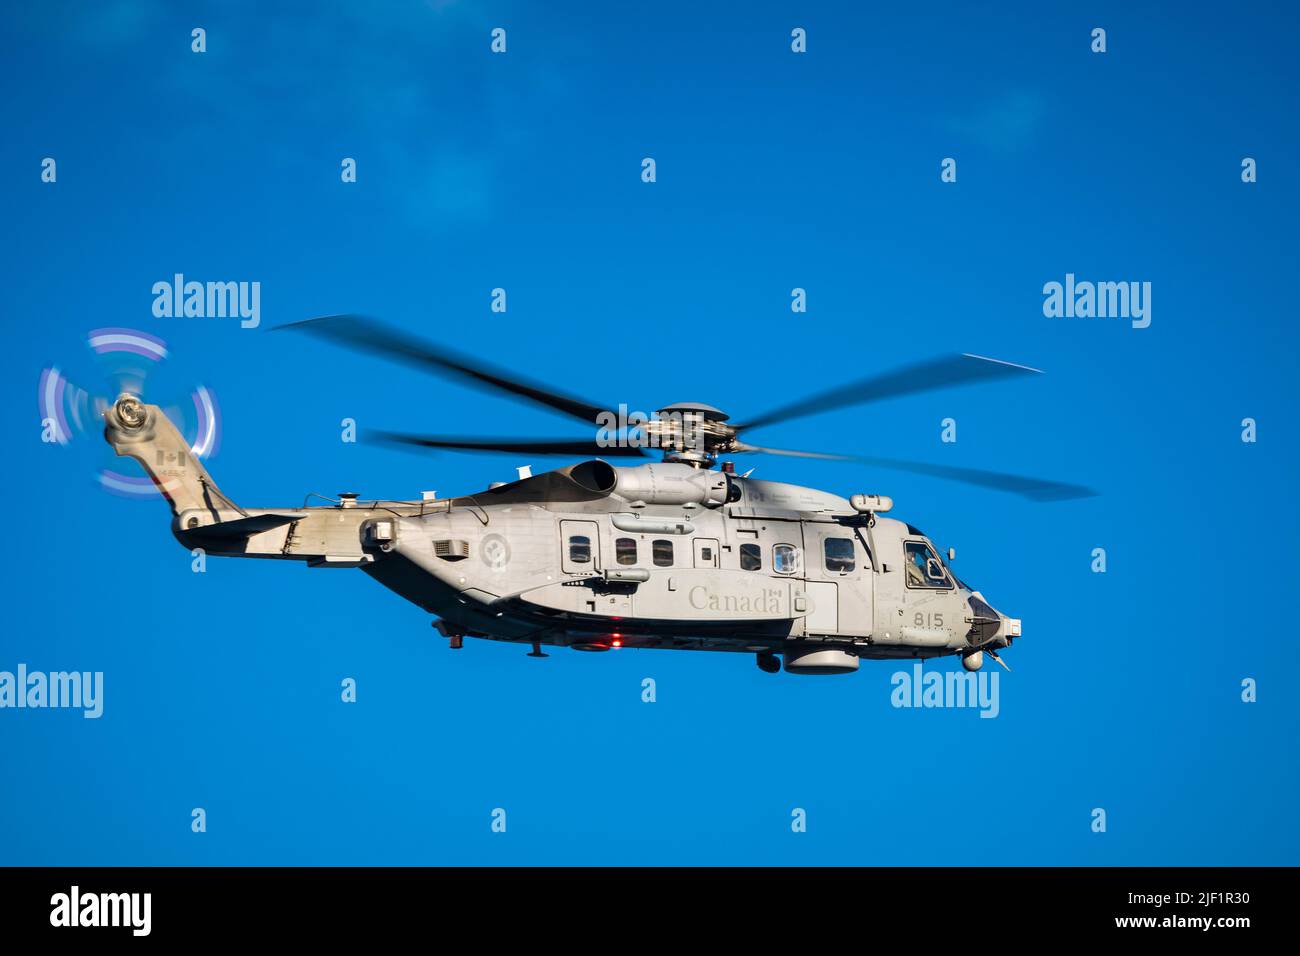 L'elicottero navale Cyclone della Royal Canadian Air Force deriva dall'elicottero civile Sikorsky S-92 e vola dalle navi della Marina. Foto Stock